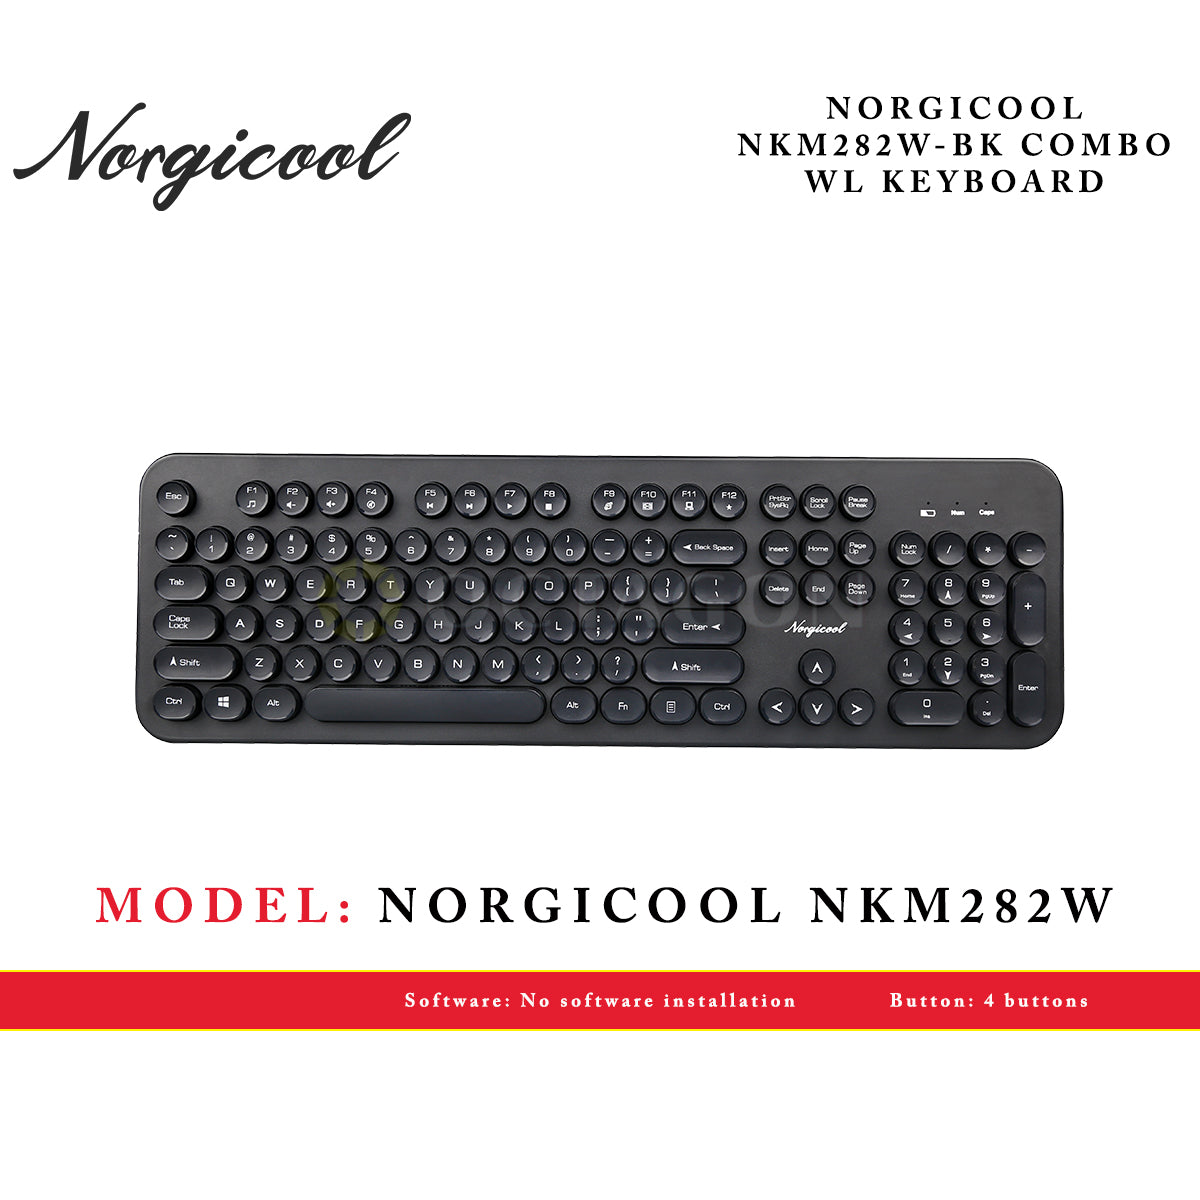 NORGICOOL NKM282W-BK COMBO WL KEYBOARD